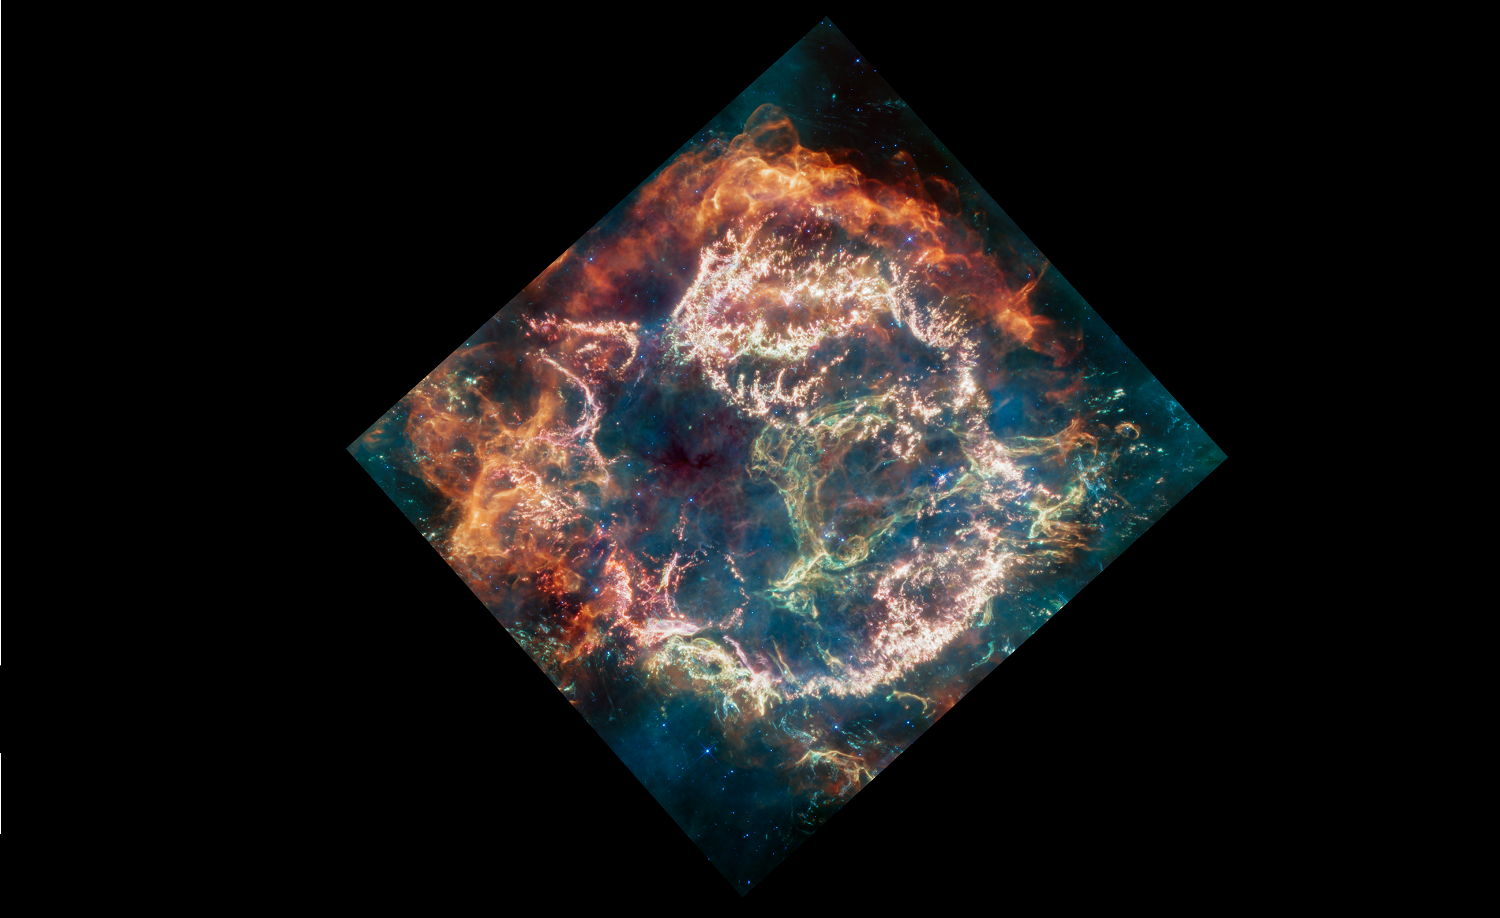 James Webb znalazł ciekawe informacje w pozostałościach najmłodszej supernowej, która wybuchła 340 lat temu